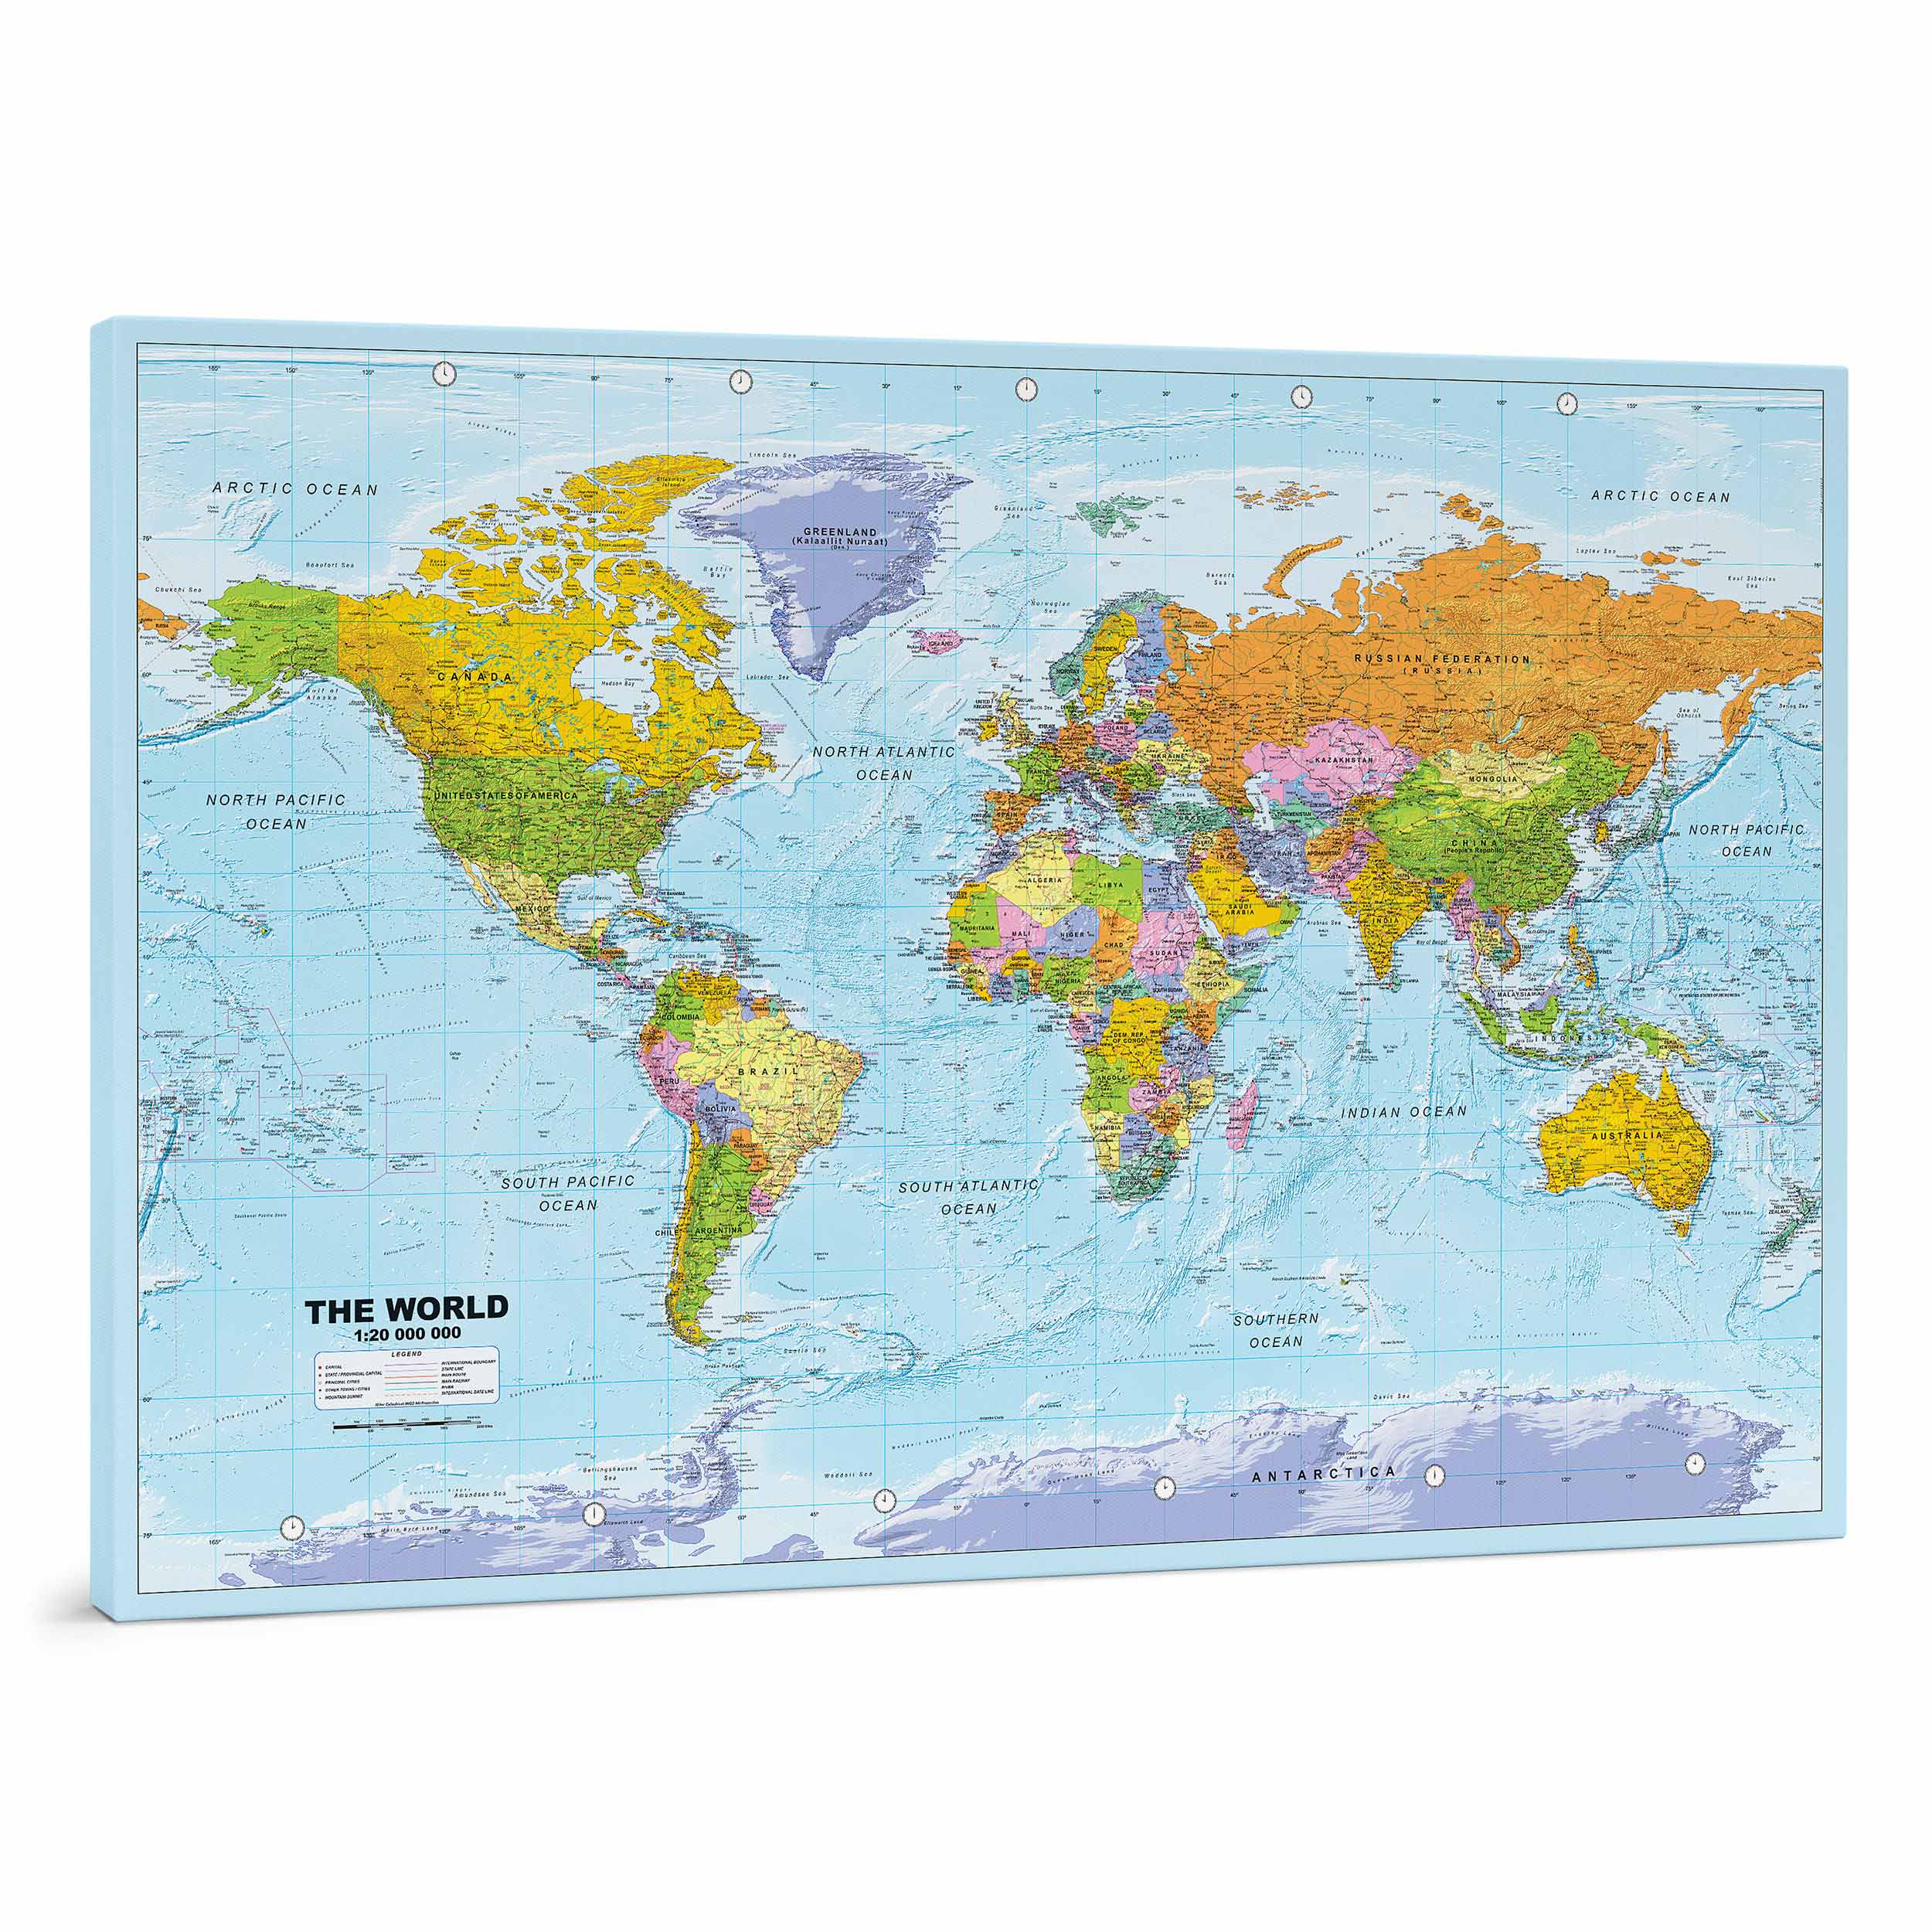 Détaillé carte sur toile - Carte du monde à épingles – Colorée